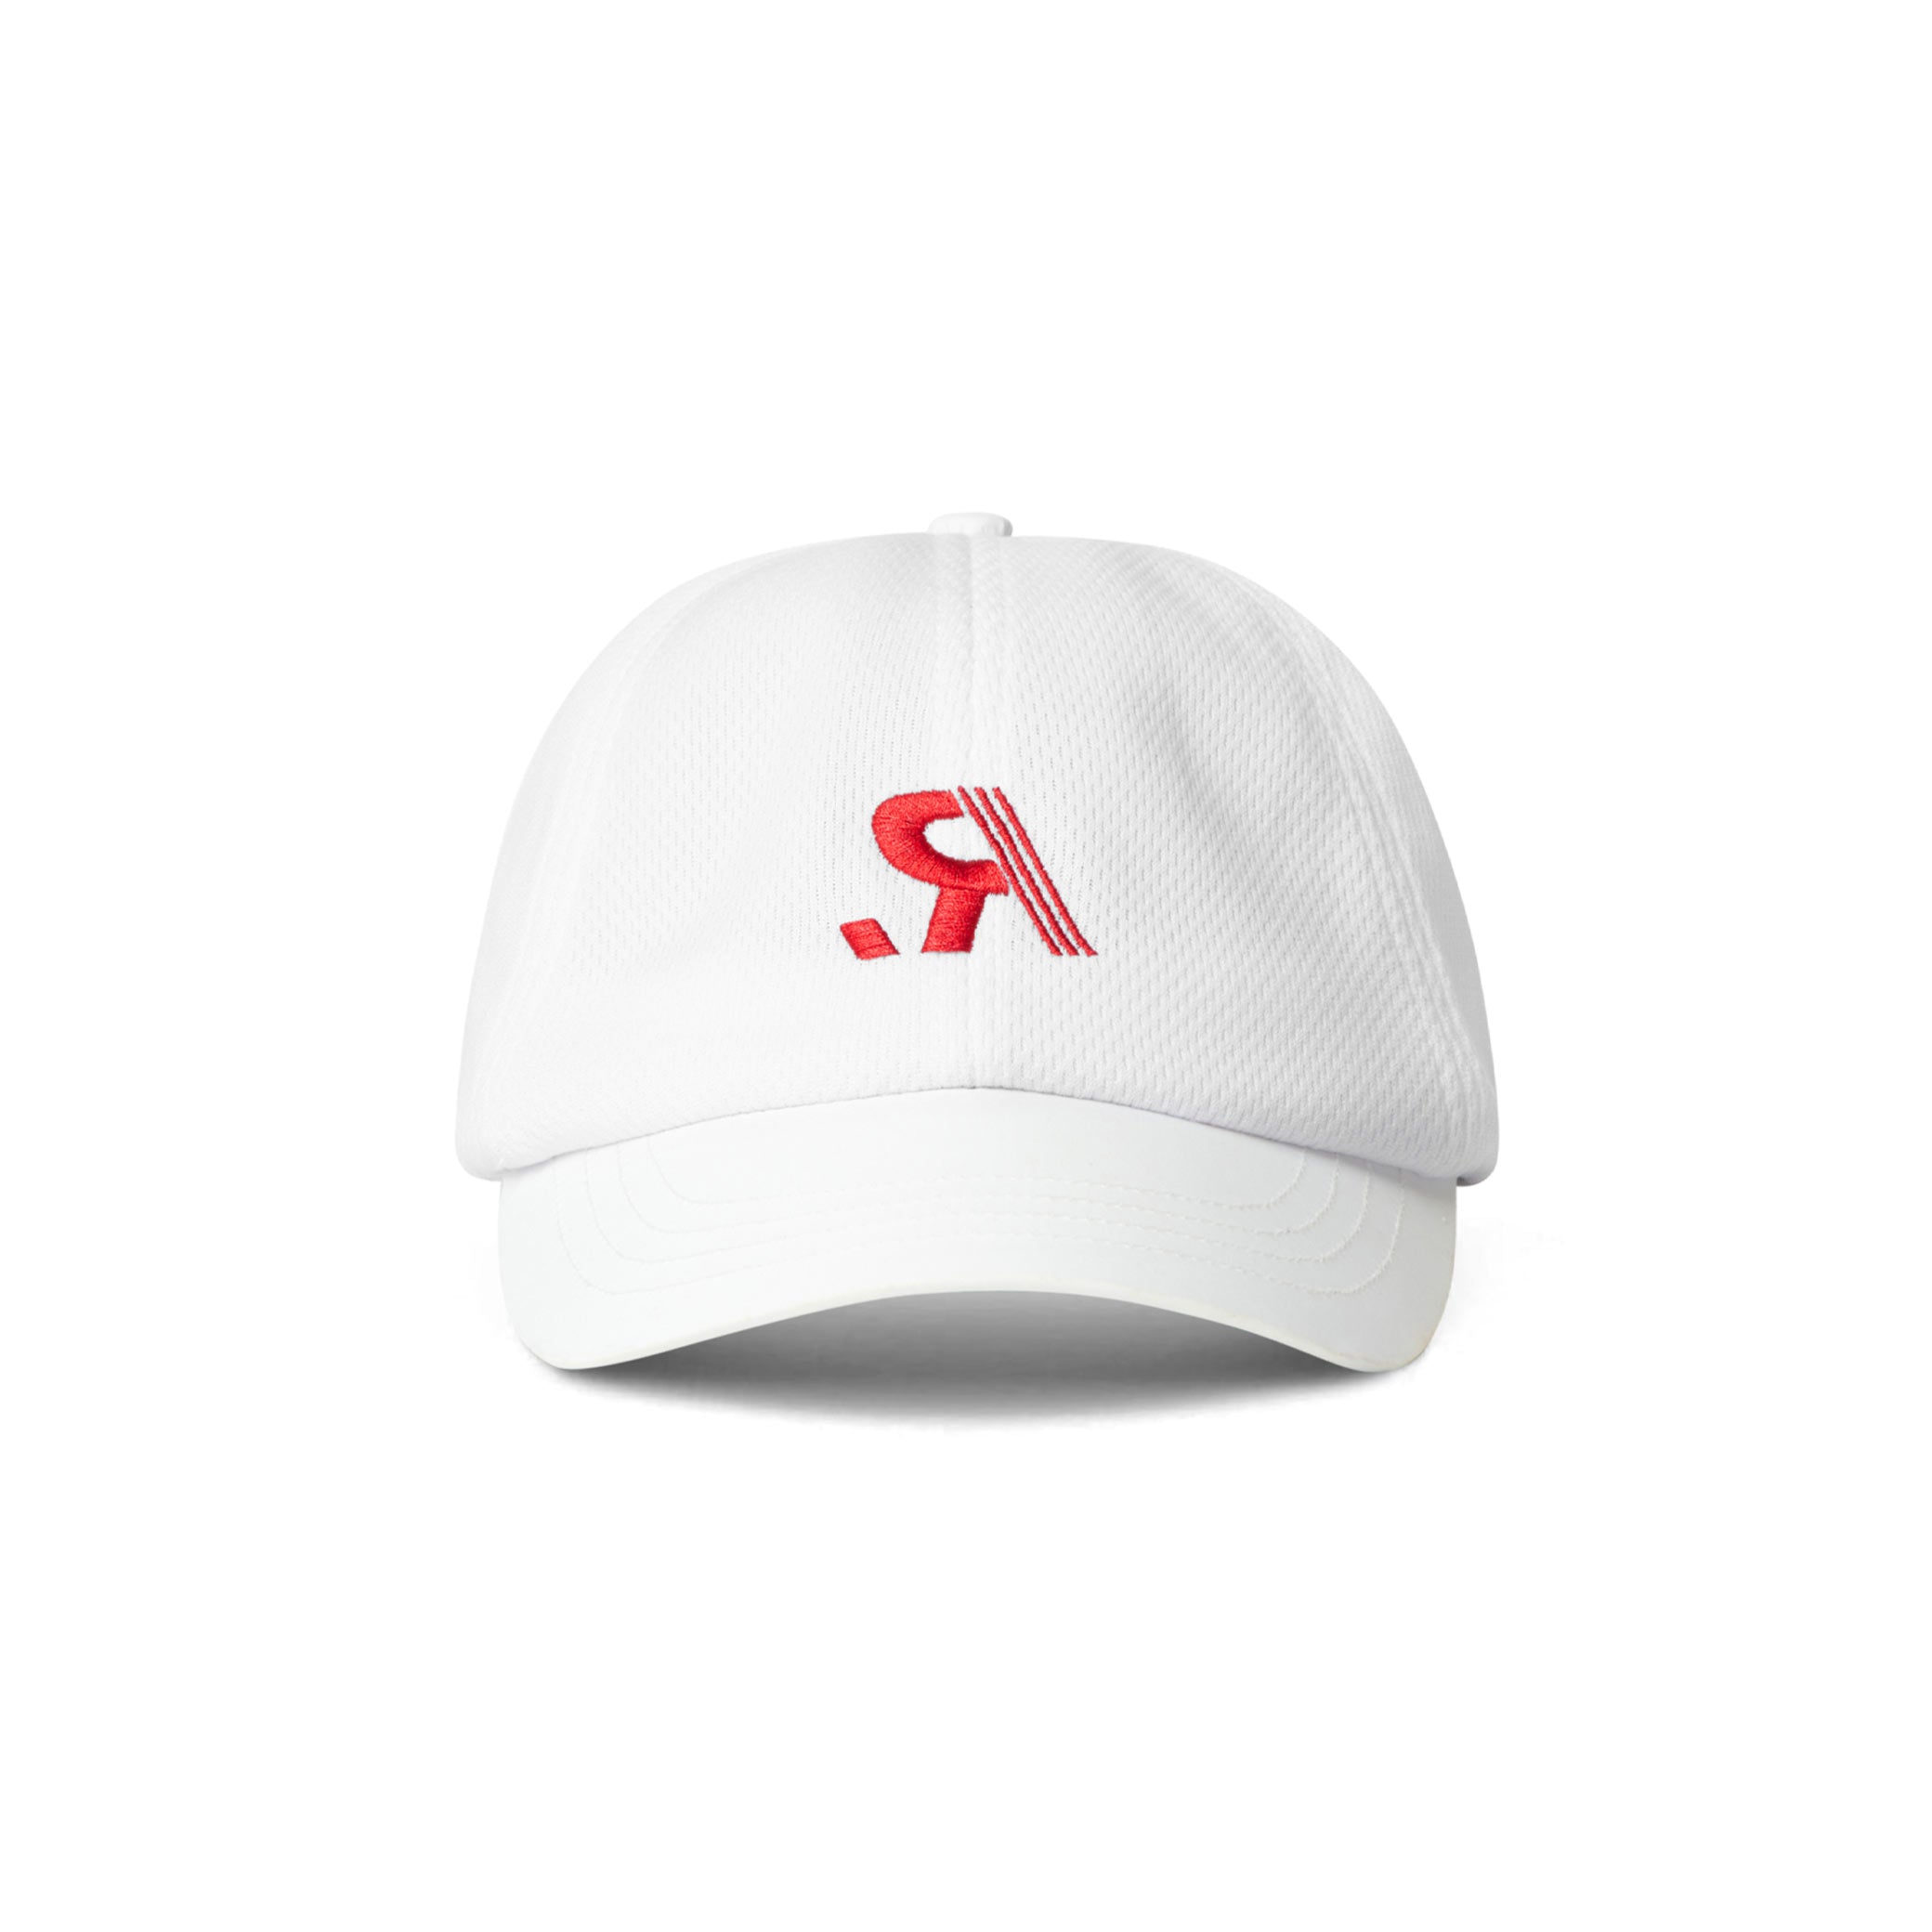 R.SPORT Tennis Hat - White/Red